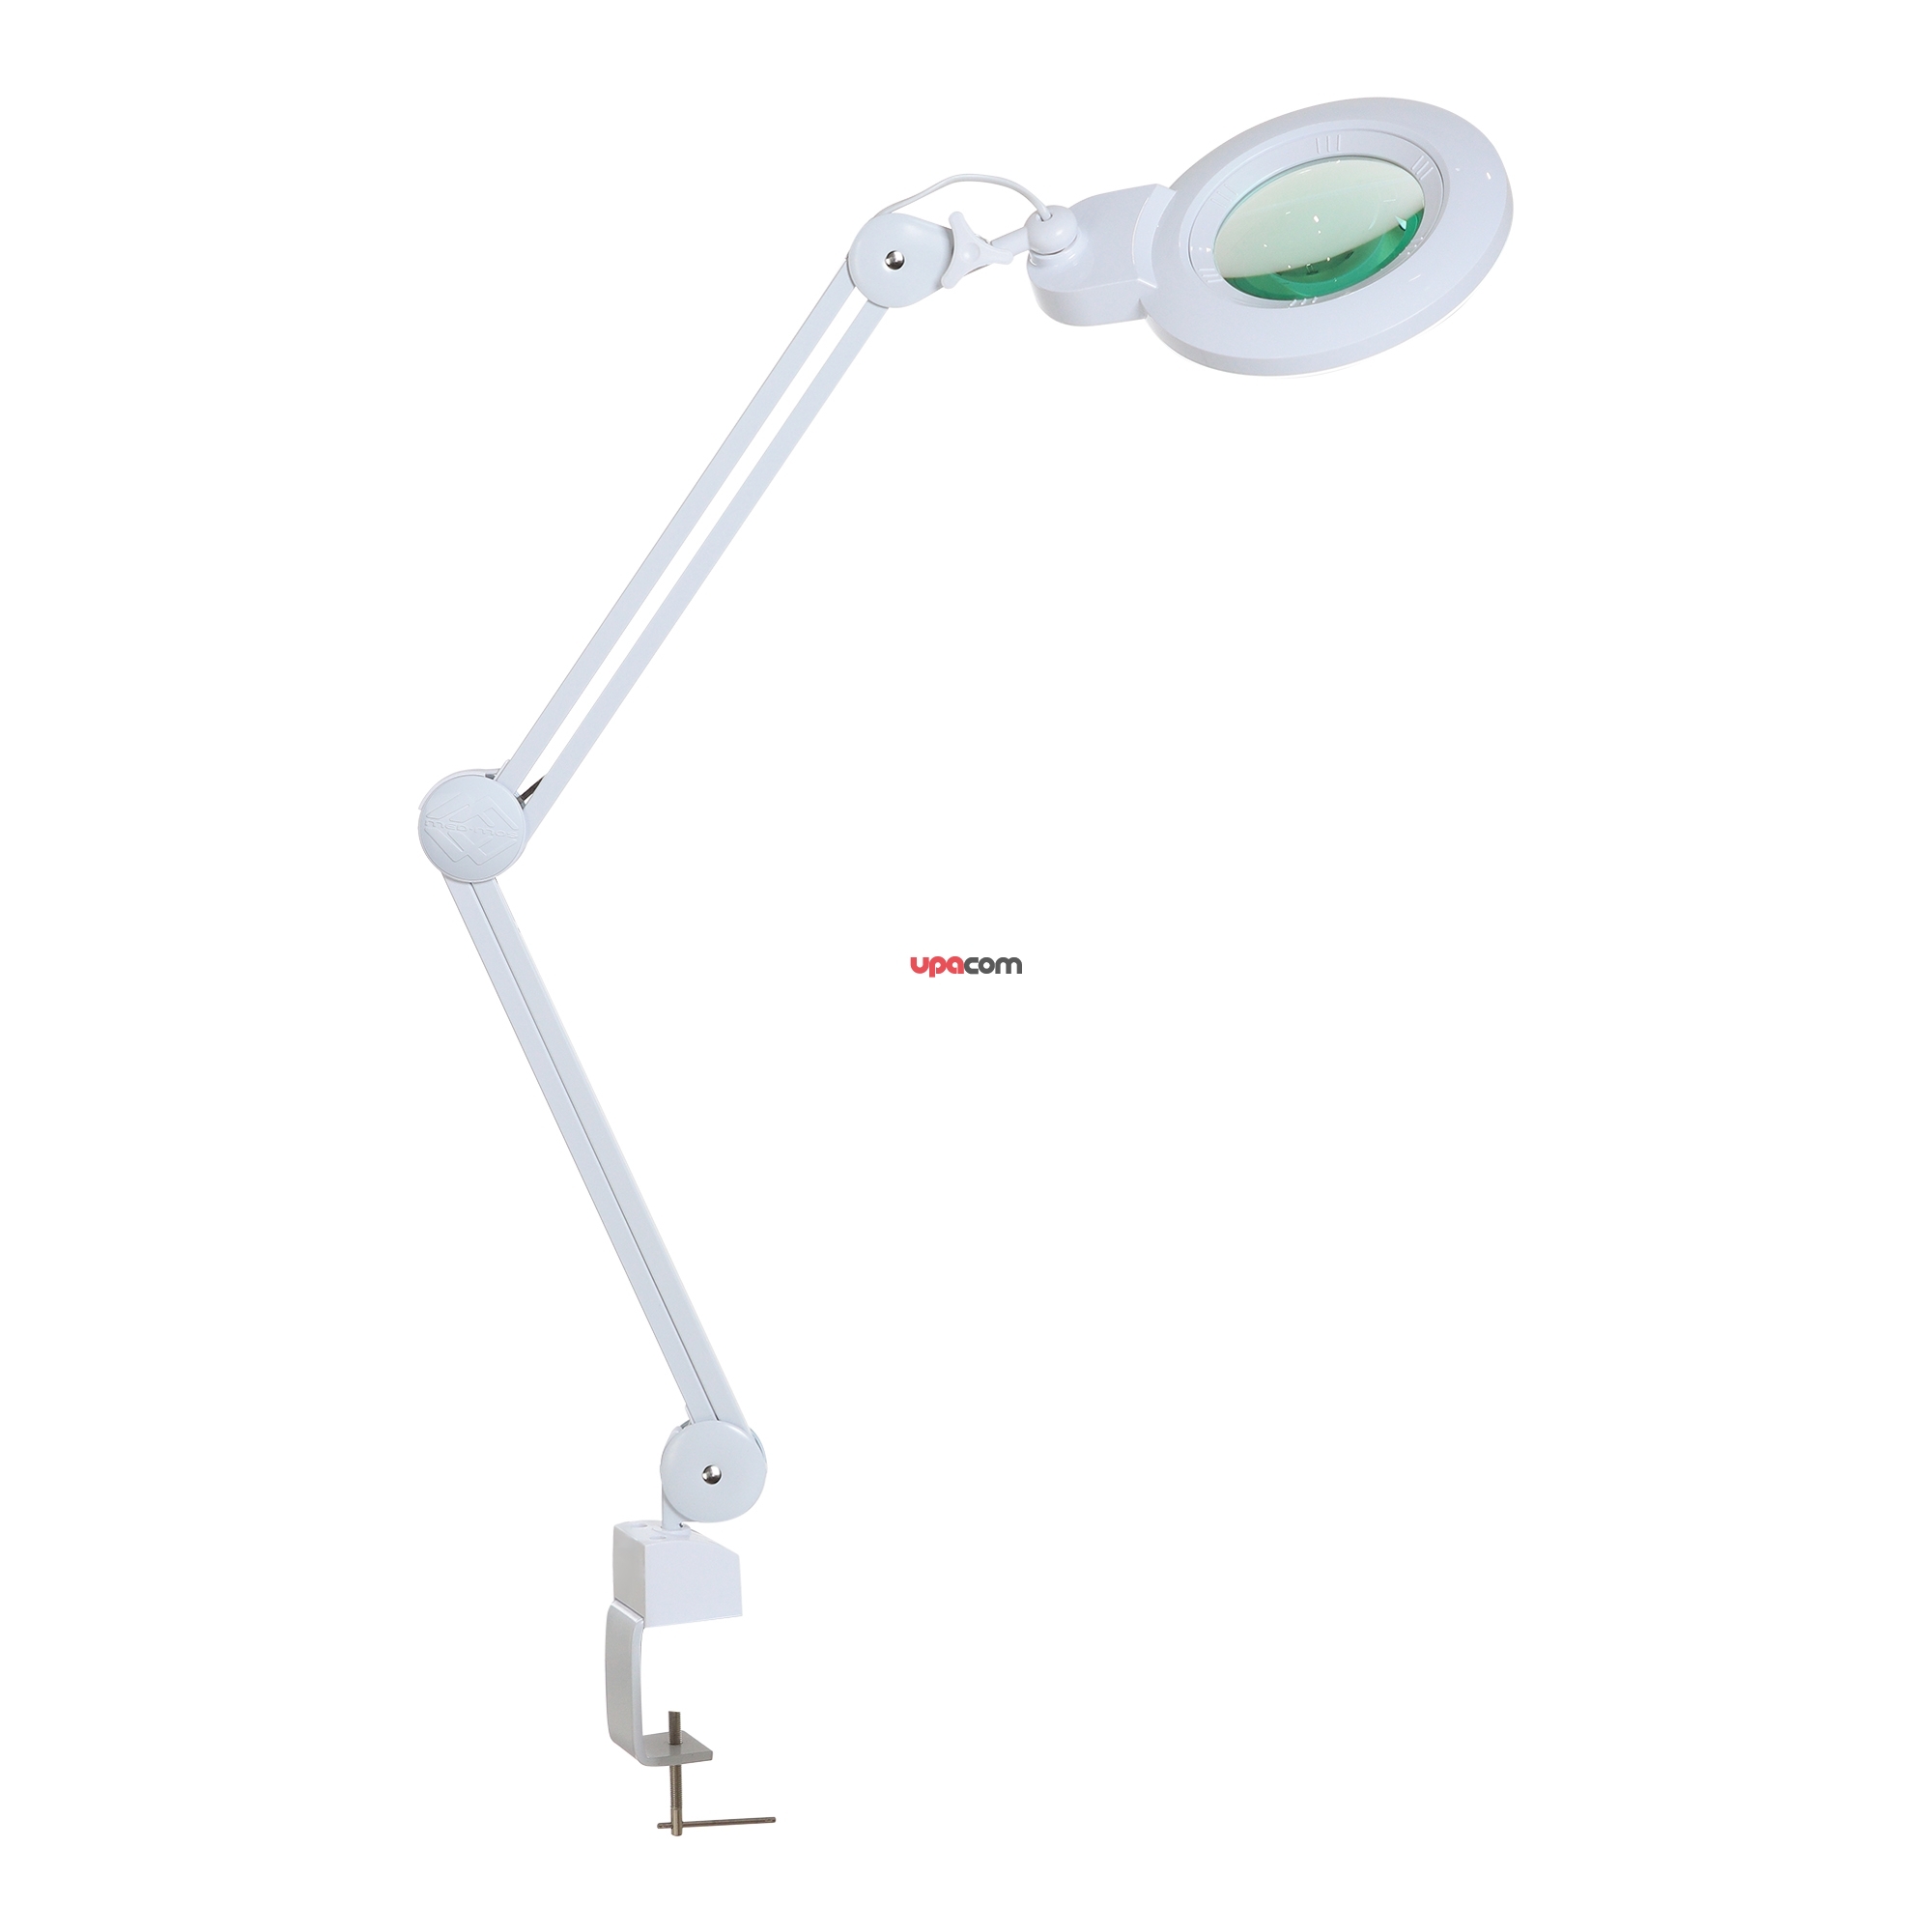 Лампа бестеневая с РУ (лампа-лупа) Med-Mos 9006LED (9006LED-D-127)